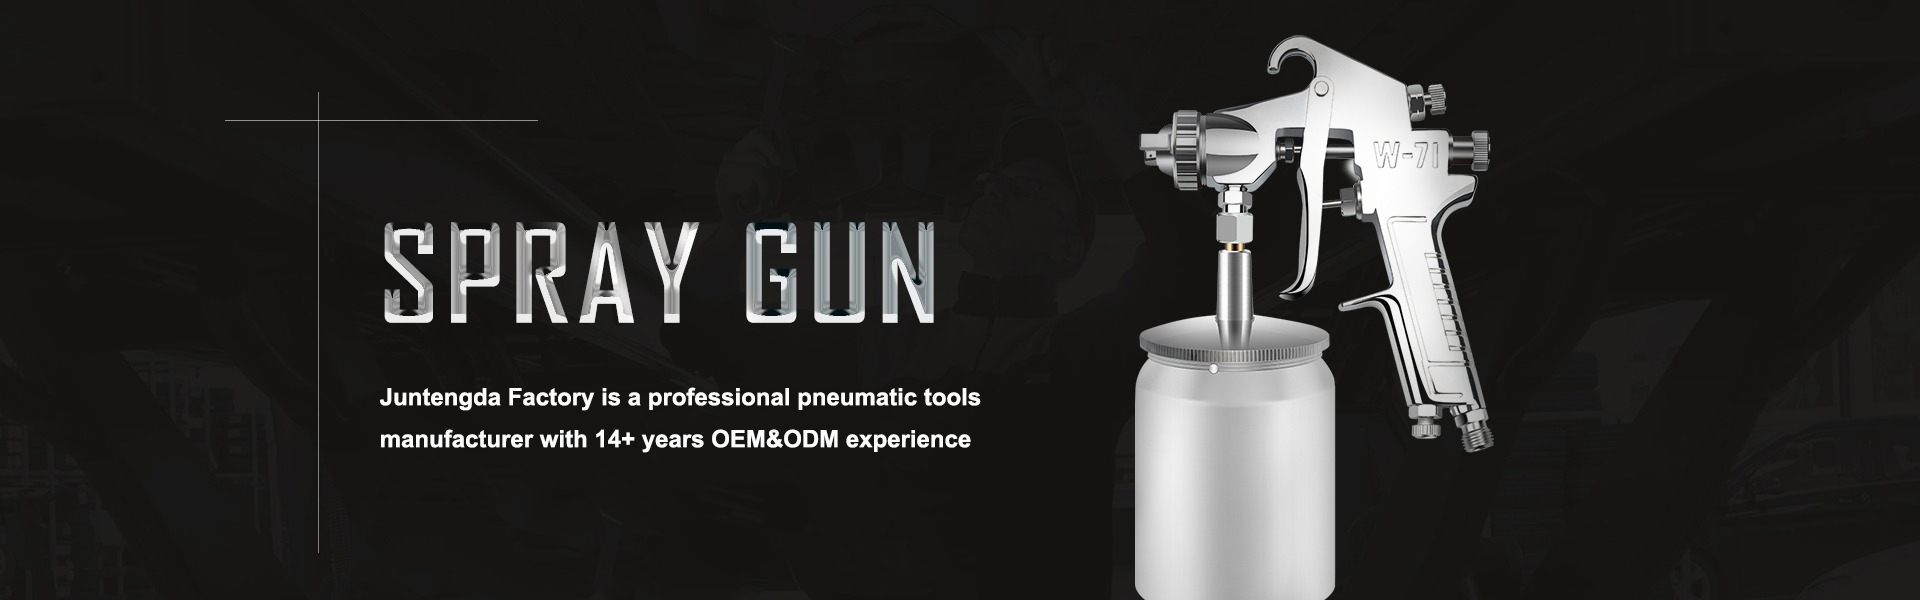 Επαγγελματικός κατασκευαστής πνευματικών εργαλείων, πυροβόλο όπλο, άμμο Air Sander,Dongguan Liaobu Juntengda Pneumatic Tools CO.,LTD